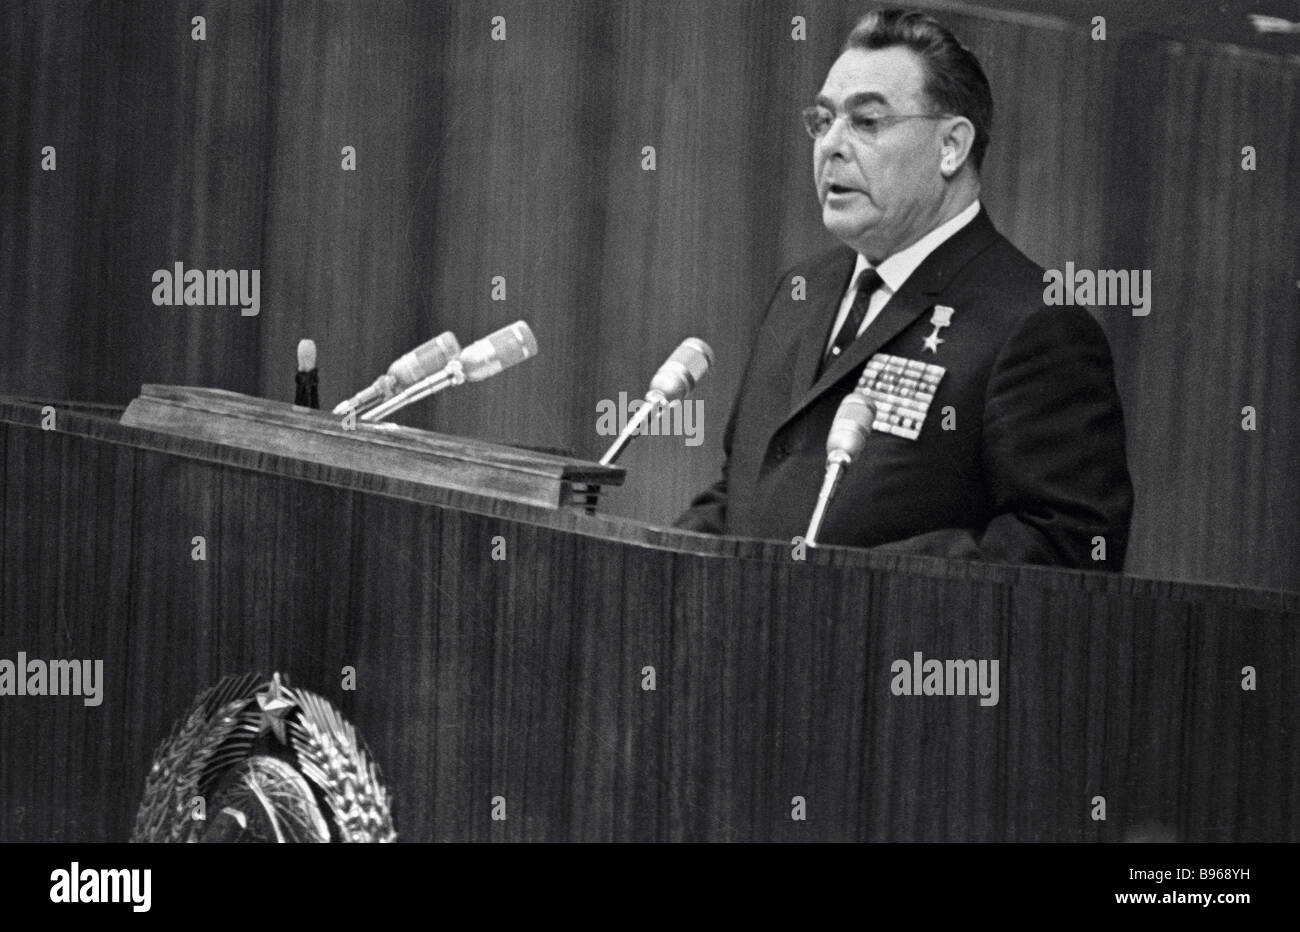 Фамилию первого секретаря цк кпсс. Первый секретарь ЦК КПСС 1965г.